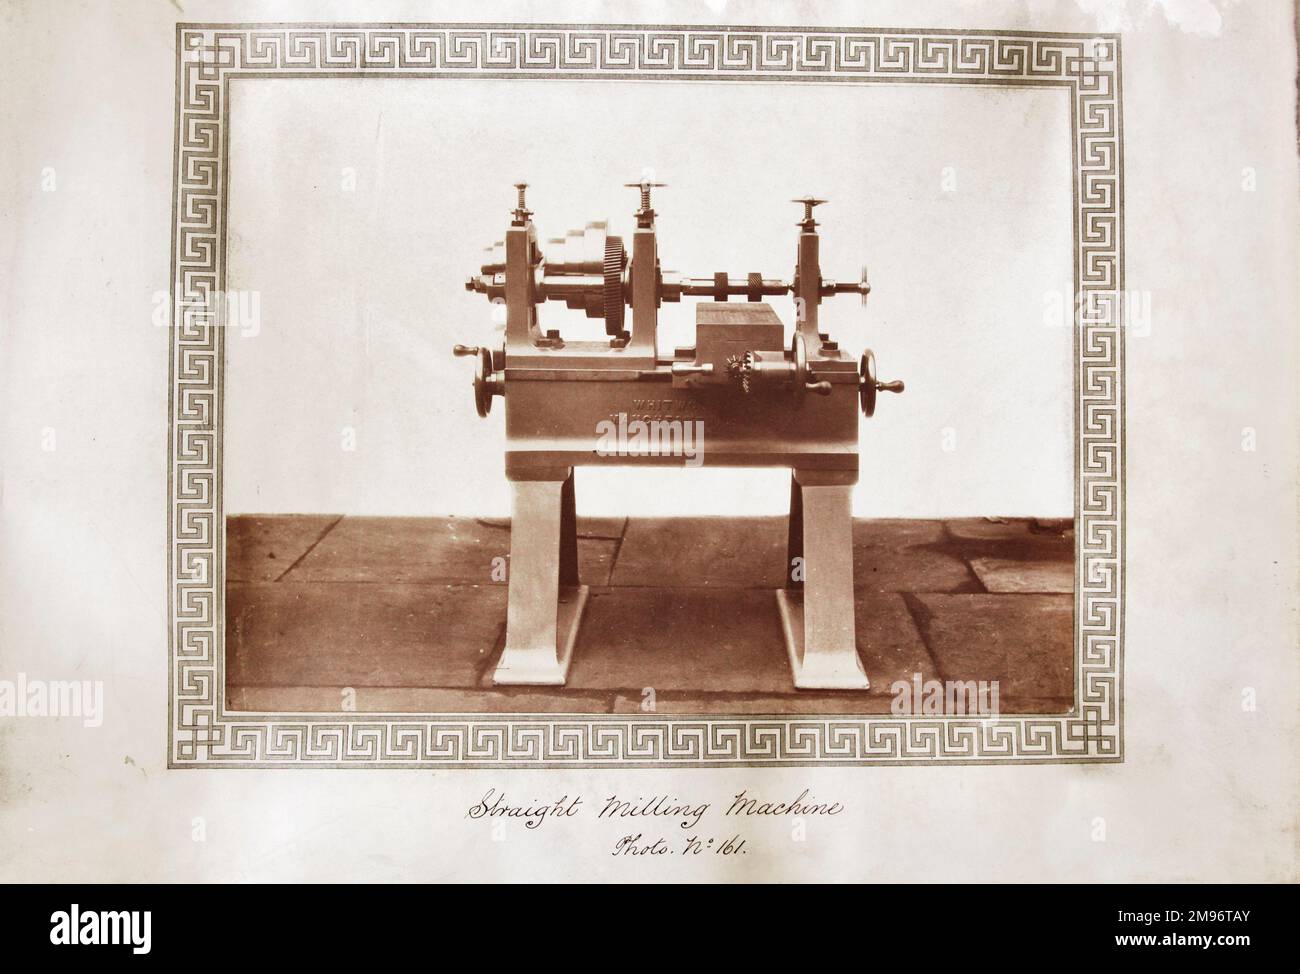 Straight milling machine Stock Photo